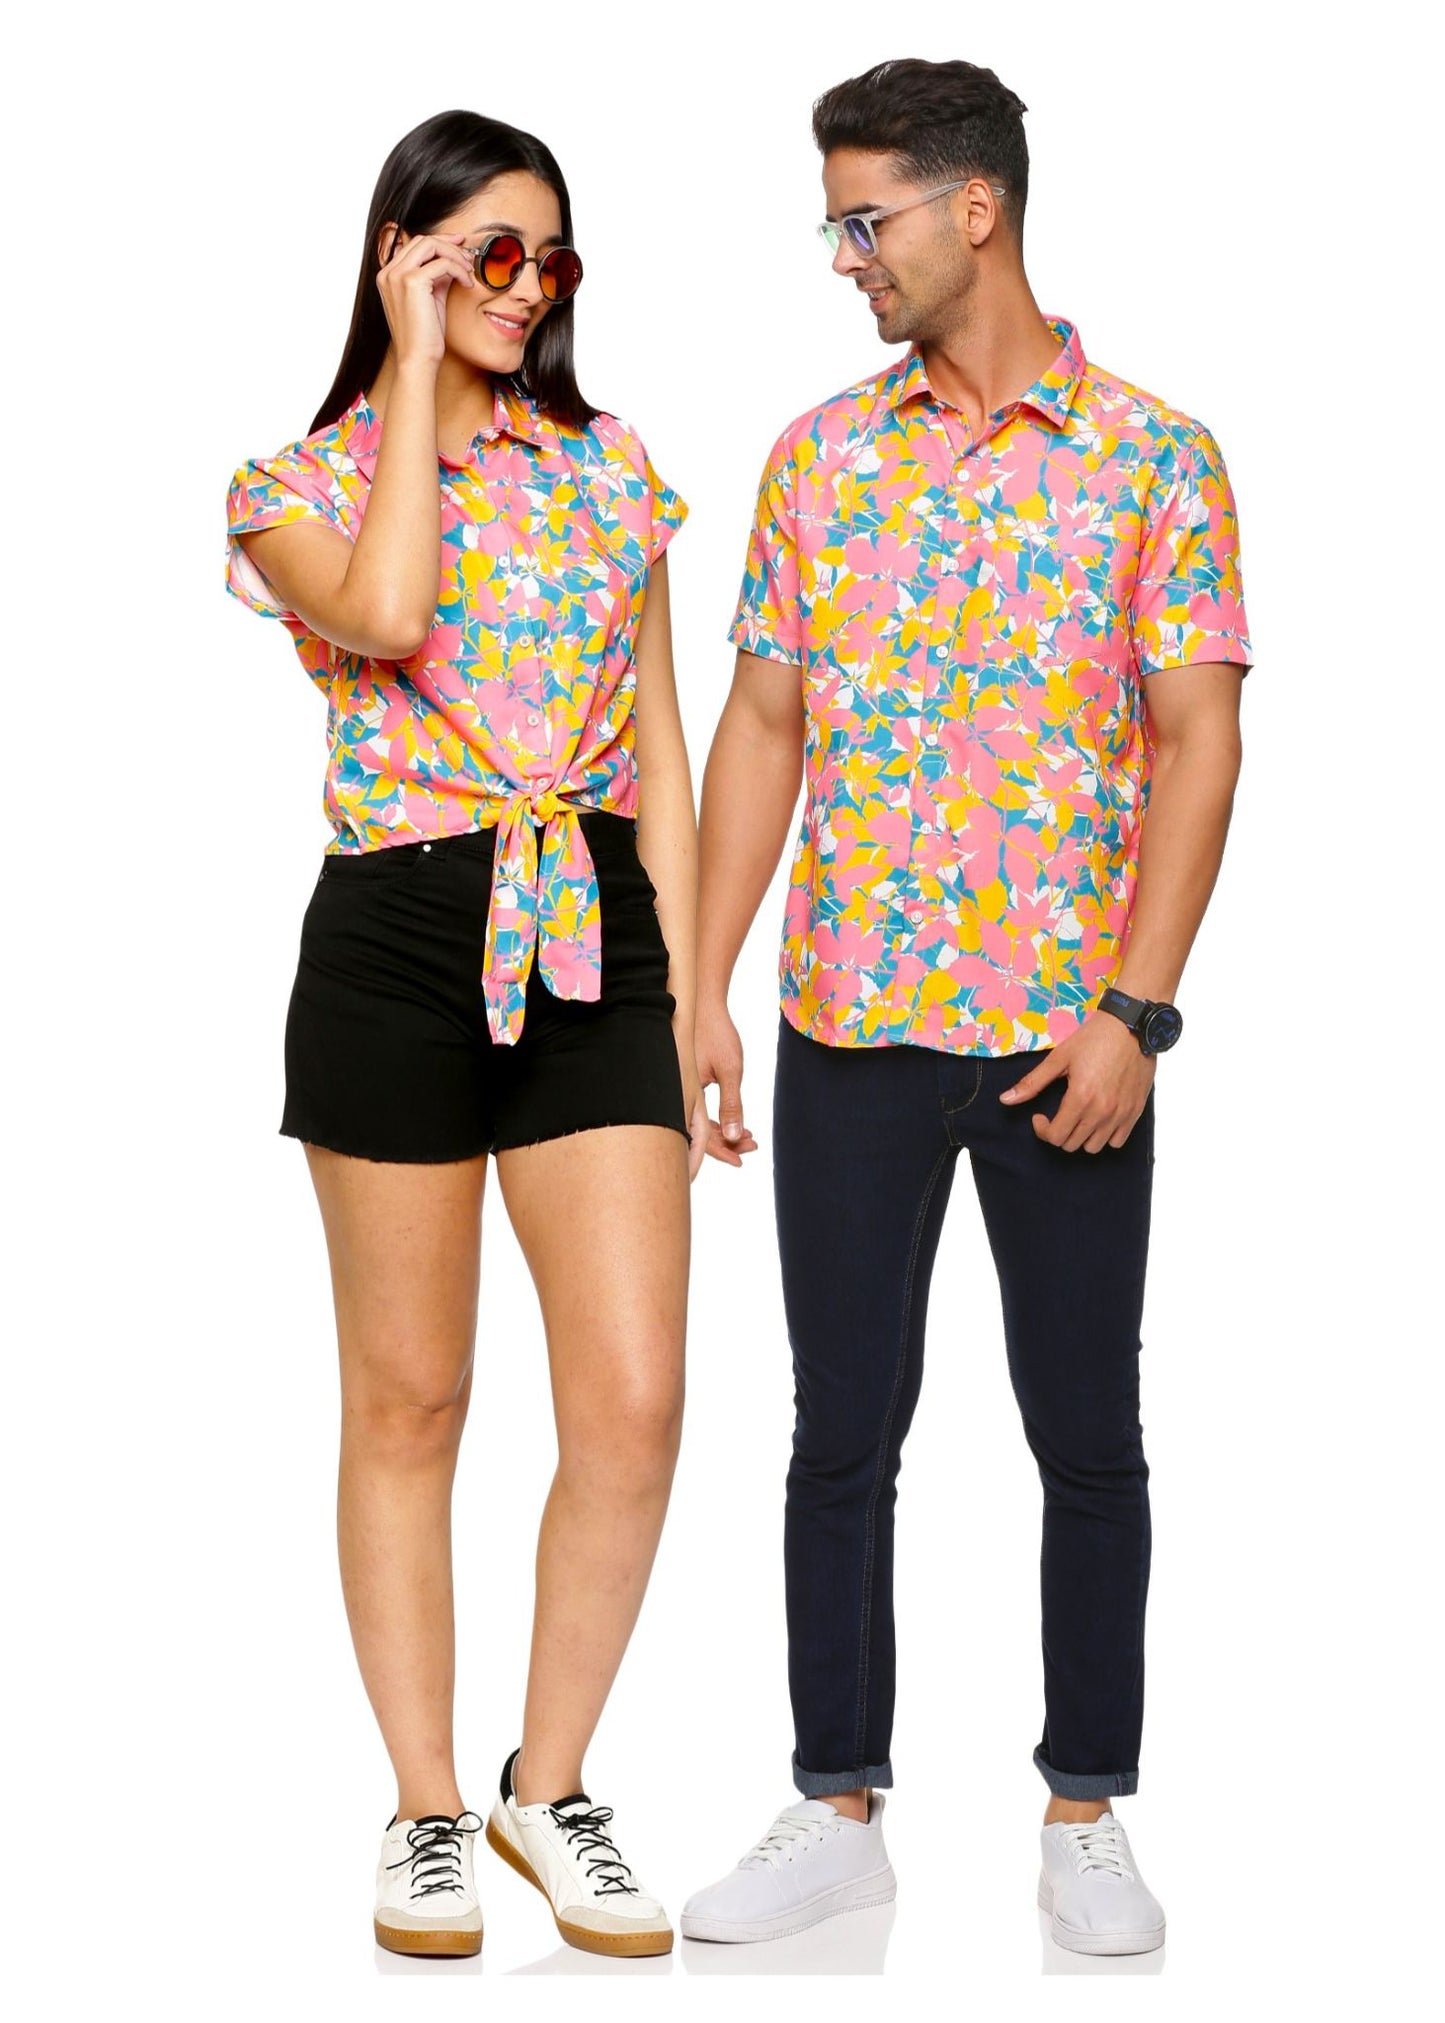 Confetti Couple Matching Shirts